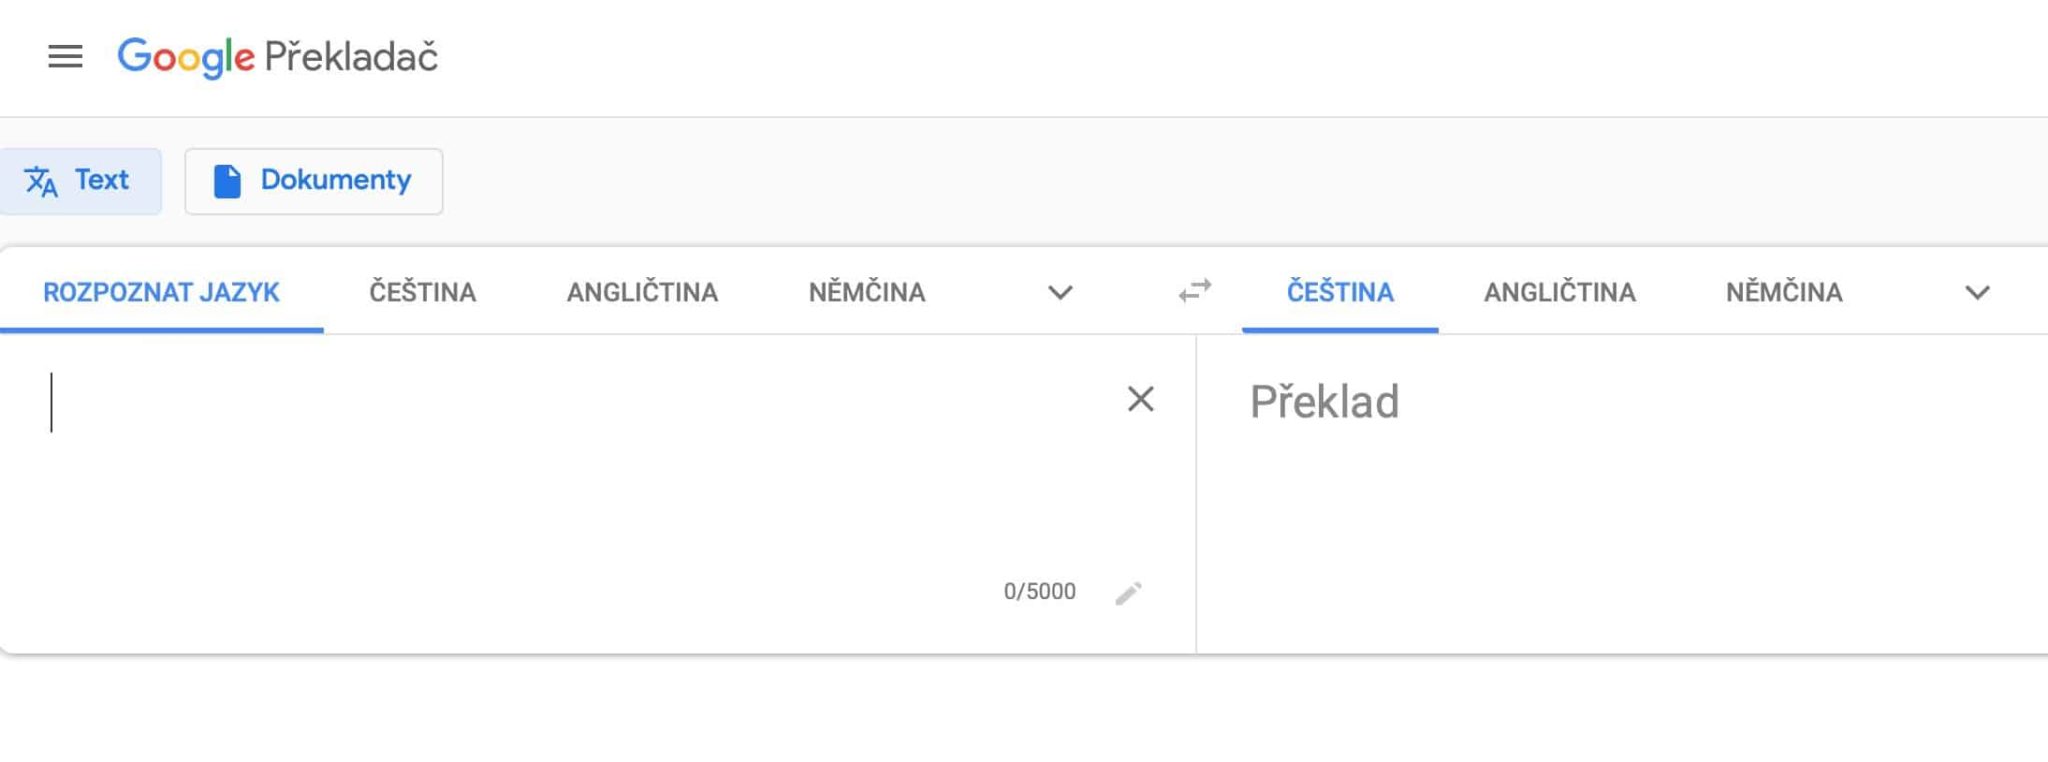 Jak používat Google Překladač? Díky Googlu přeložíte cokoliv